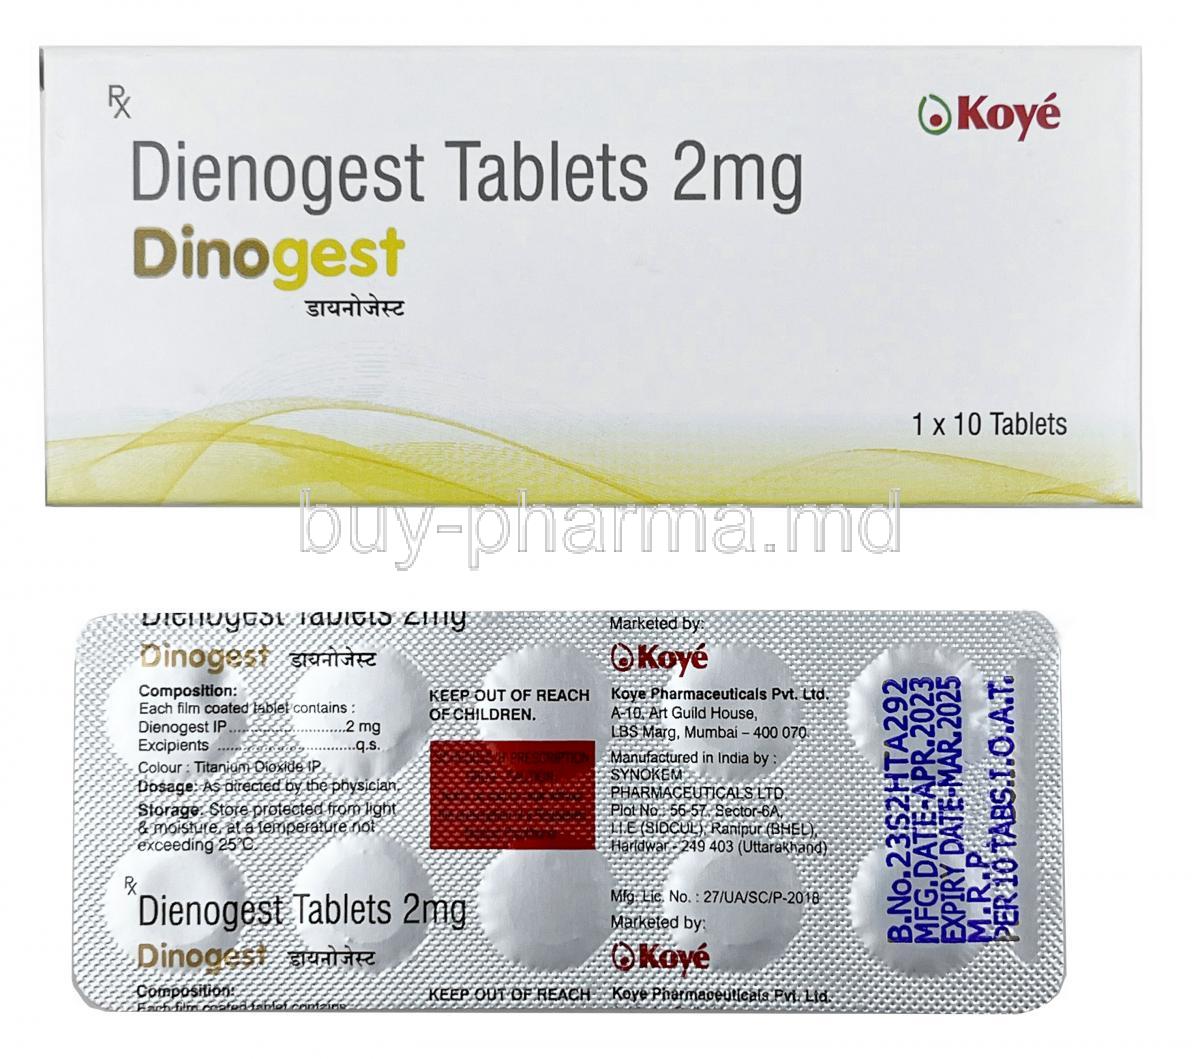 Dinogest, Dienogest 2mg, Koye Pharmaceutical, Box, Blisterpack